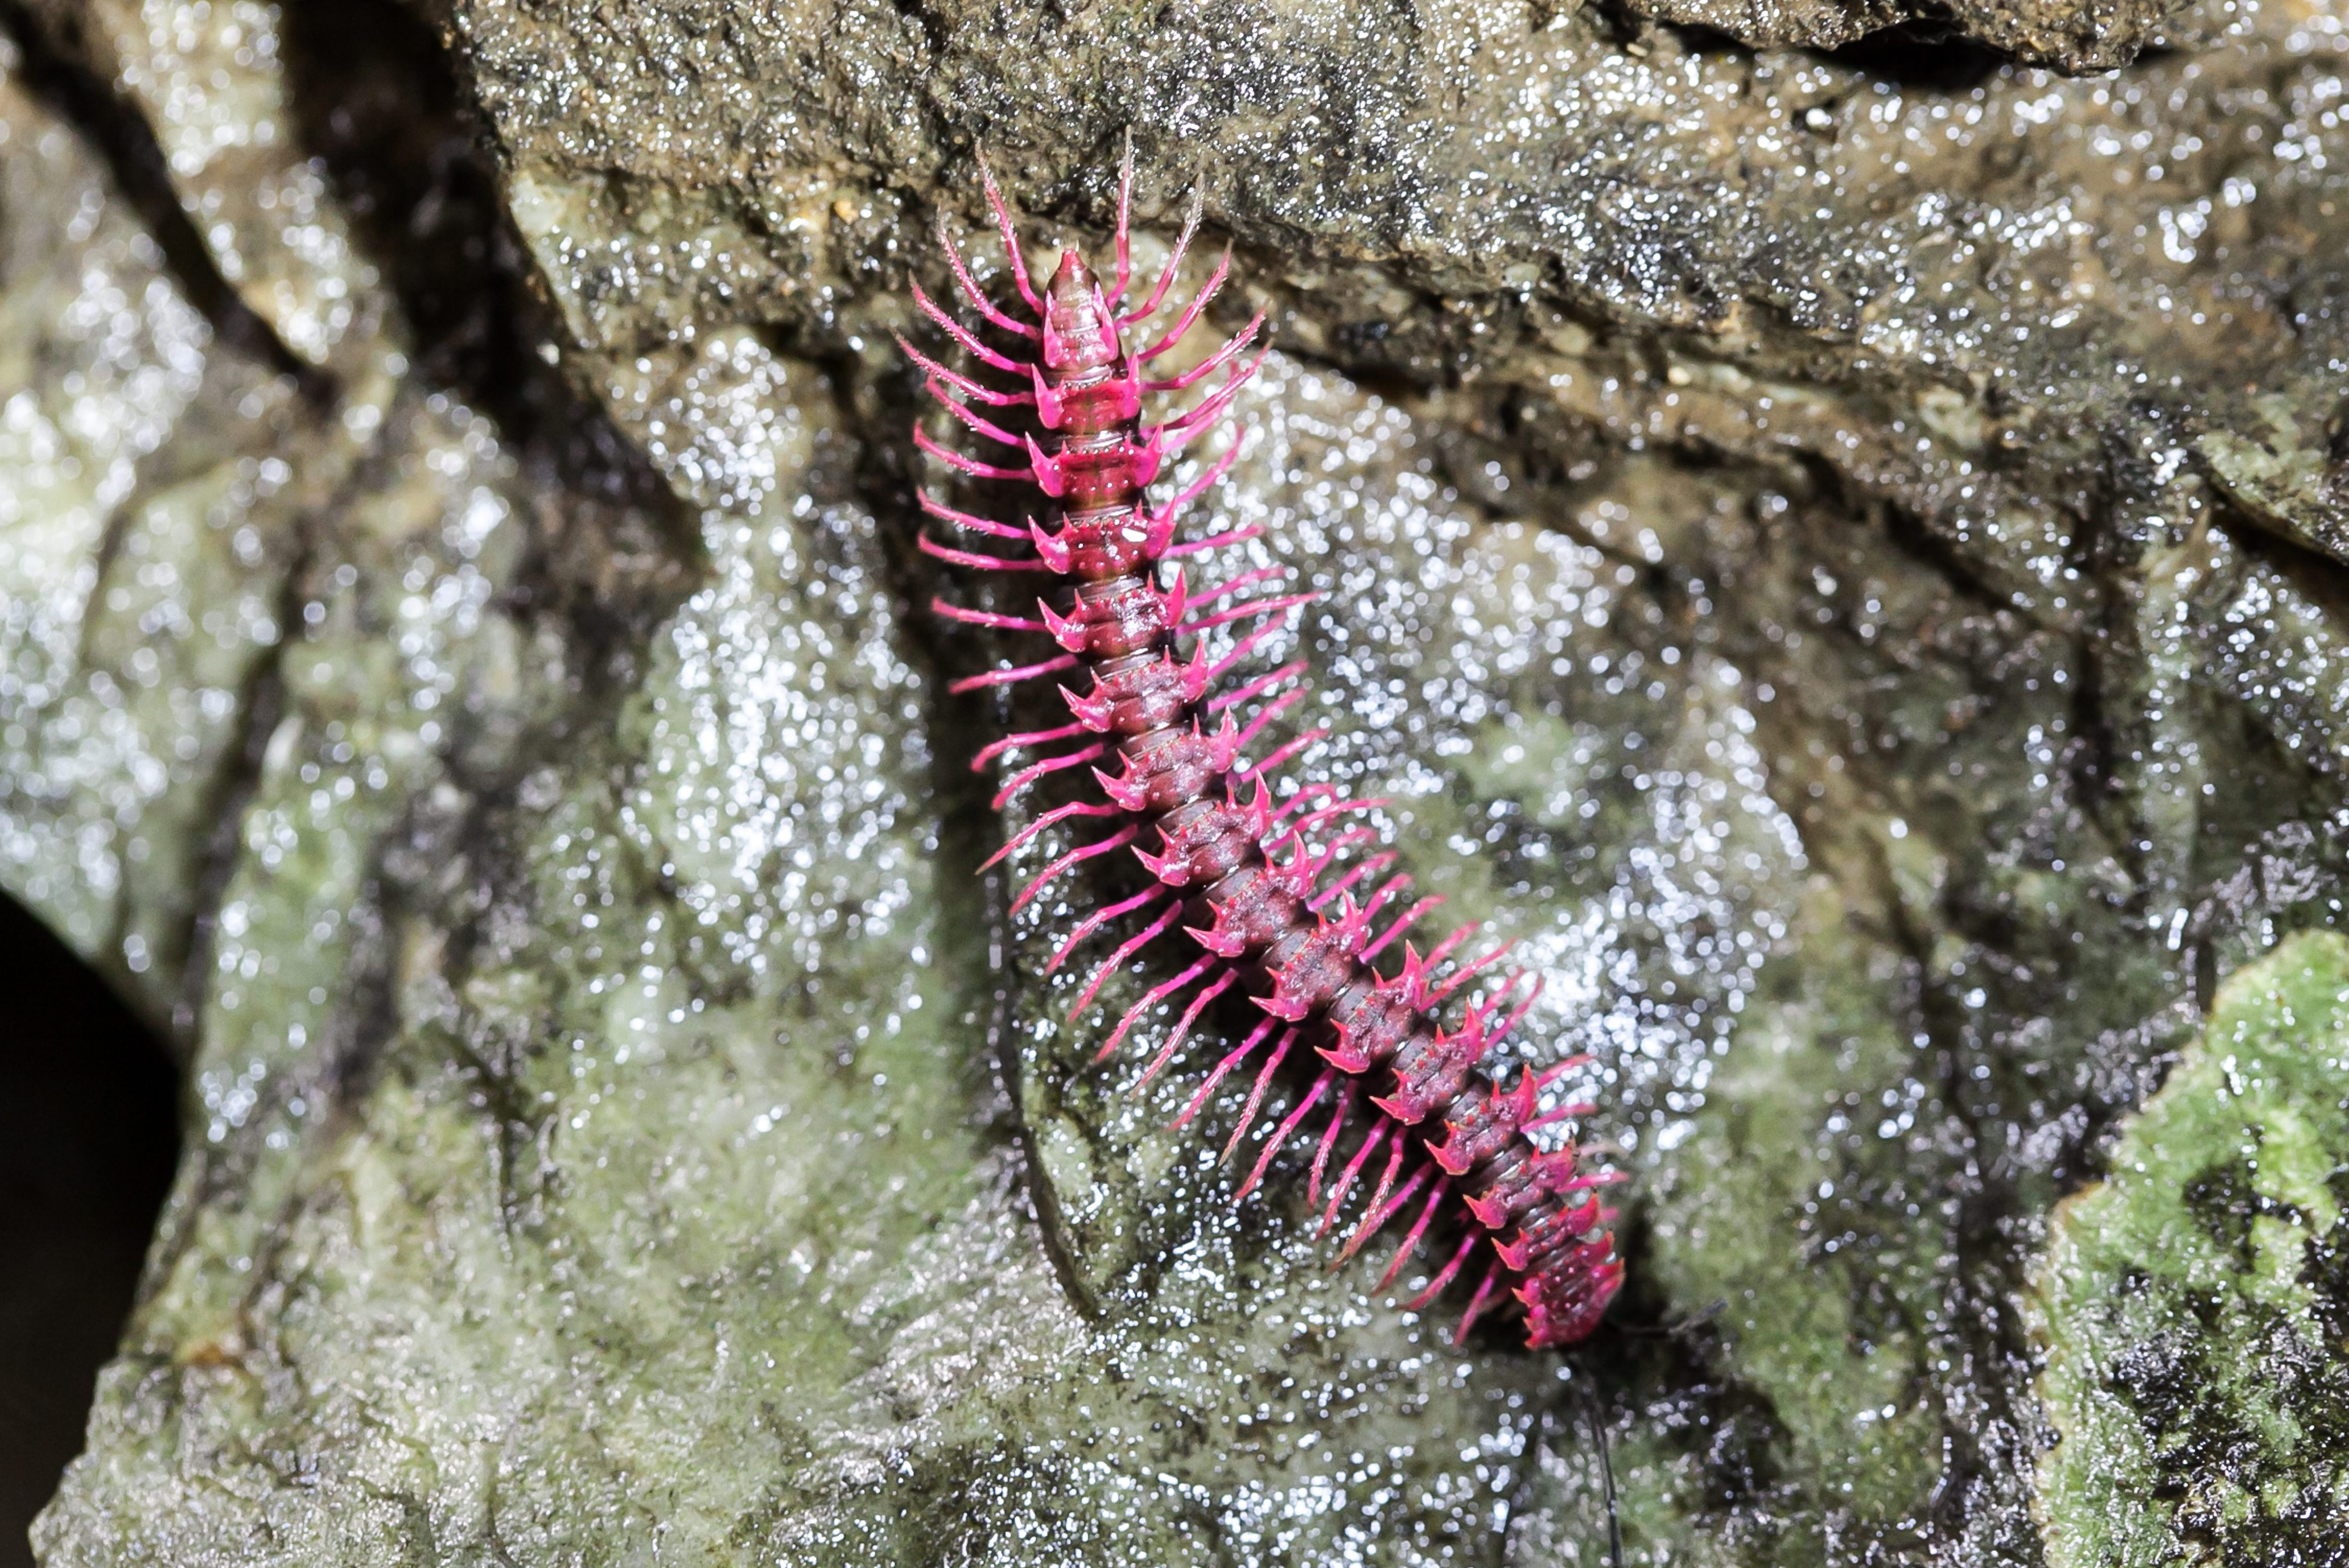 Shocking pink millipede (Desmocytes purpurosea),